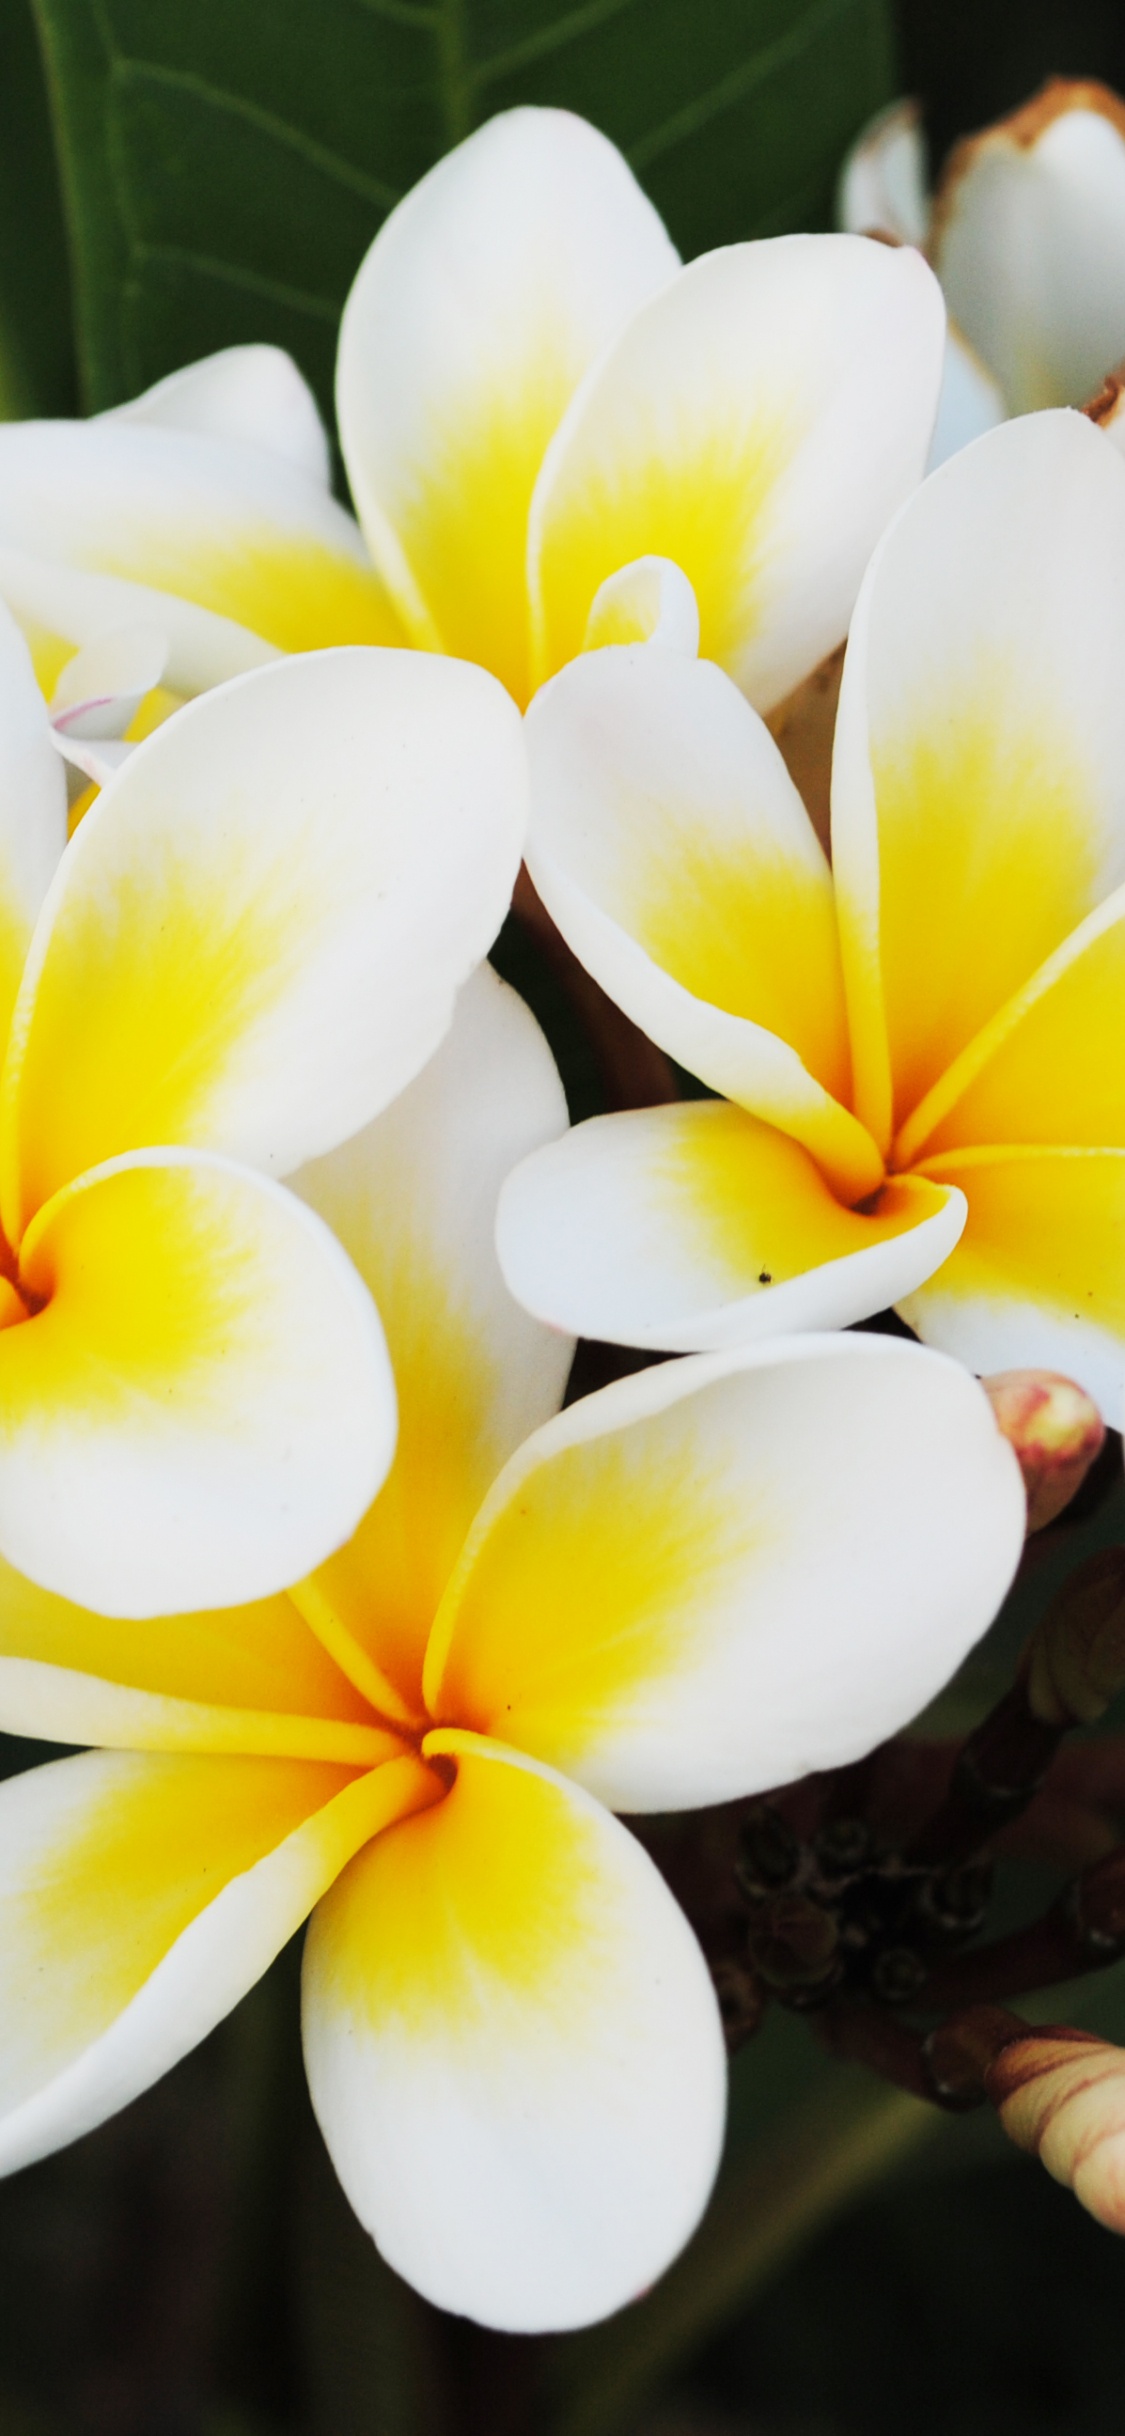 Weiße Und Gelbe Blume in Nahaufnahmen. Wallpaper in 1125x2436 Resolution